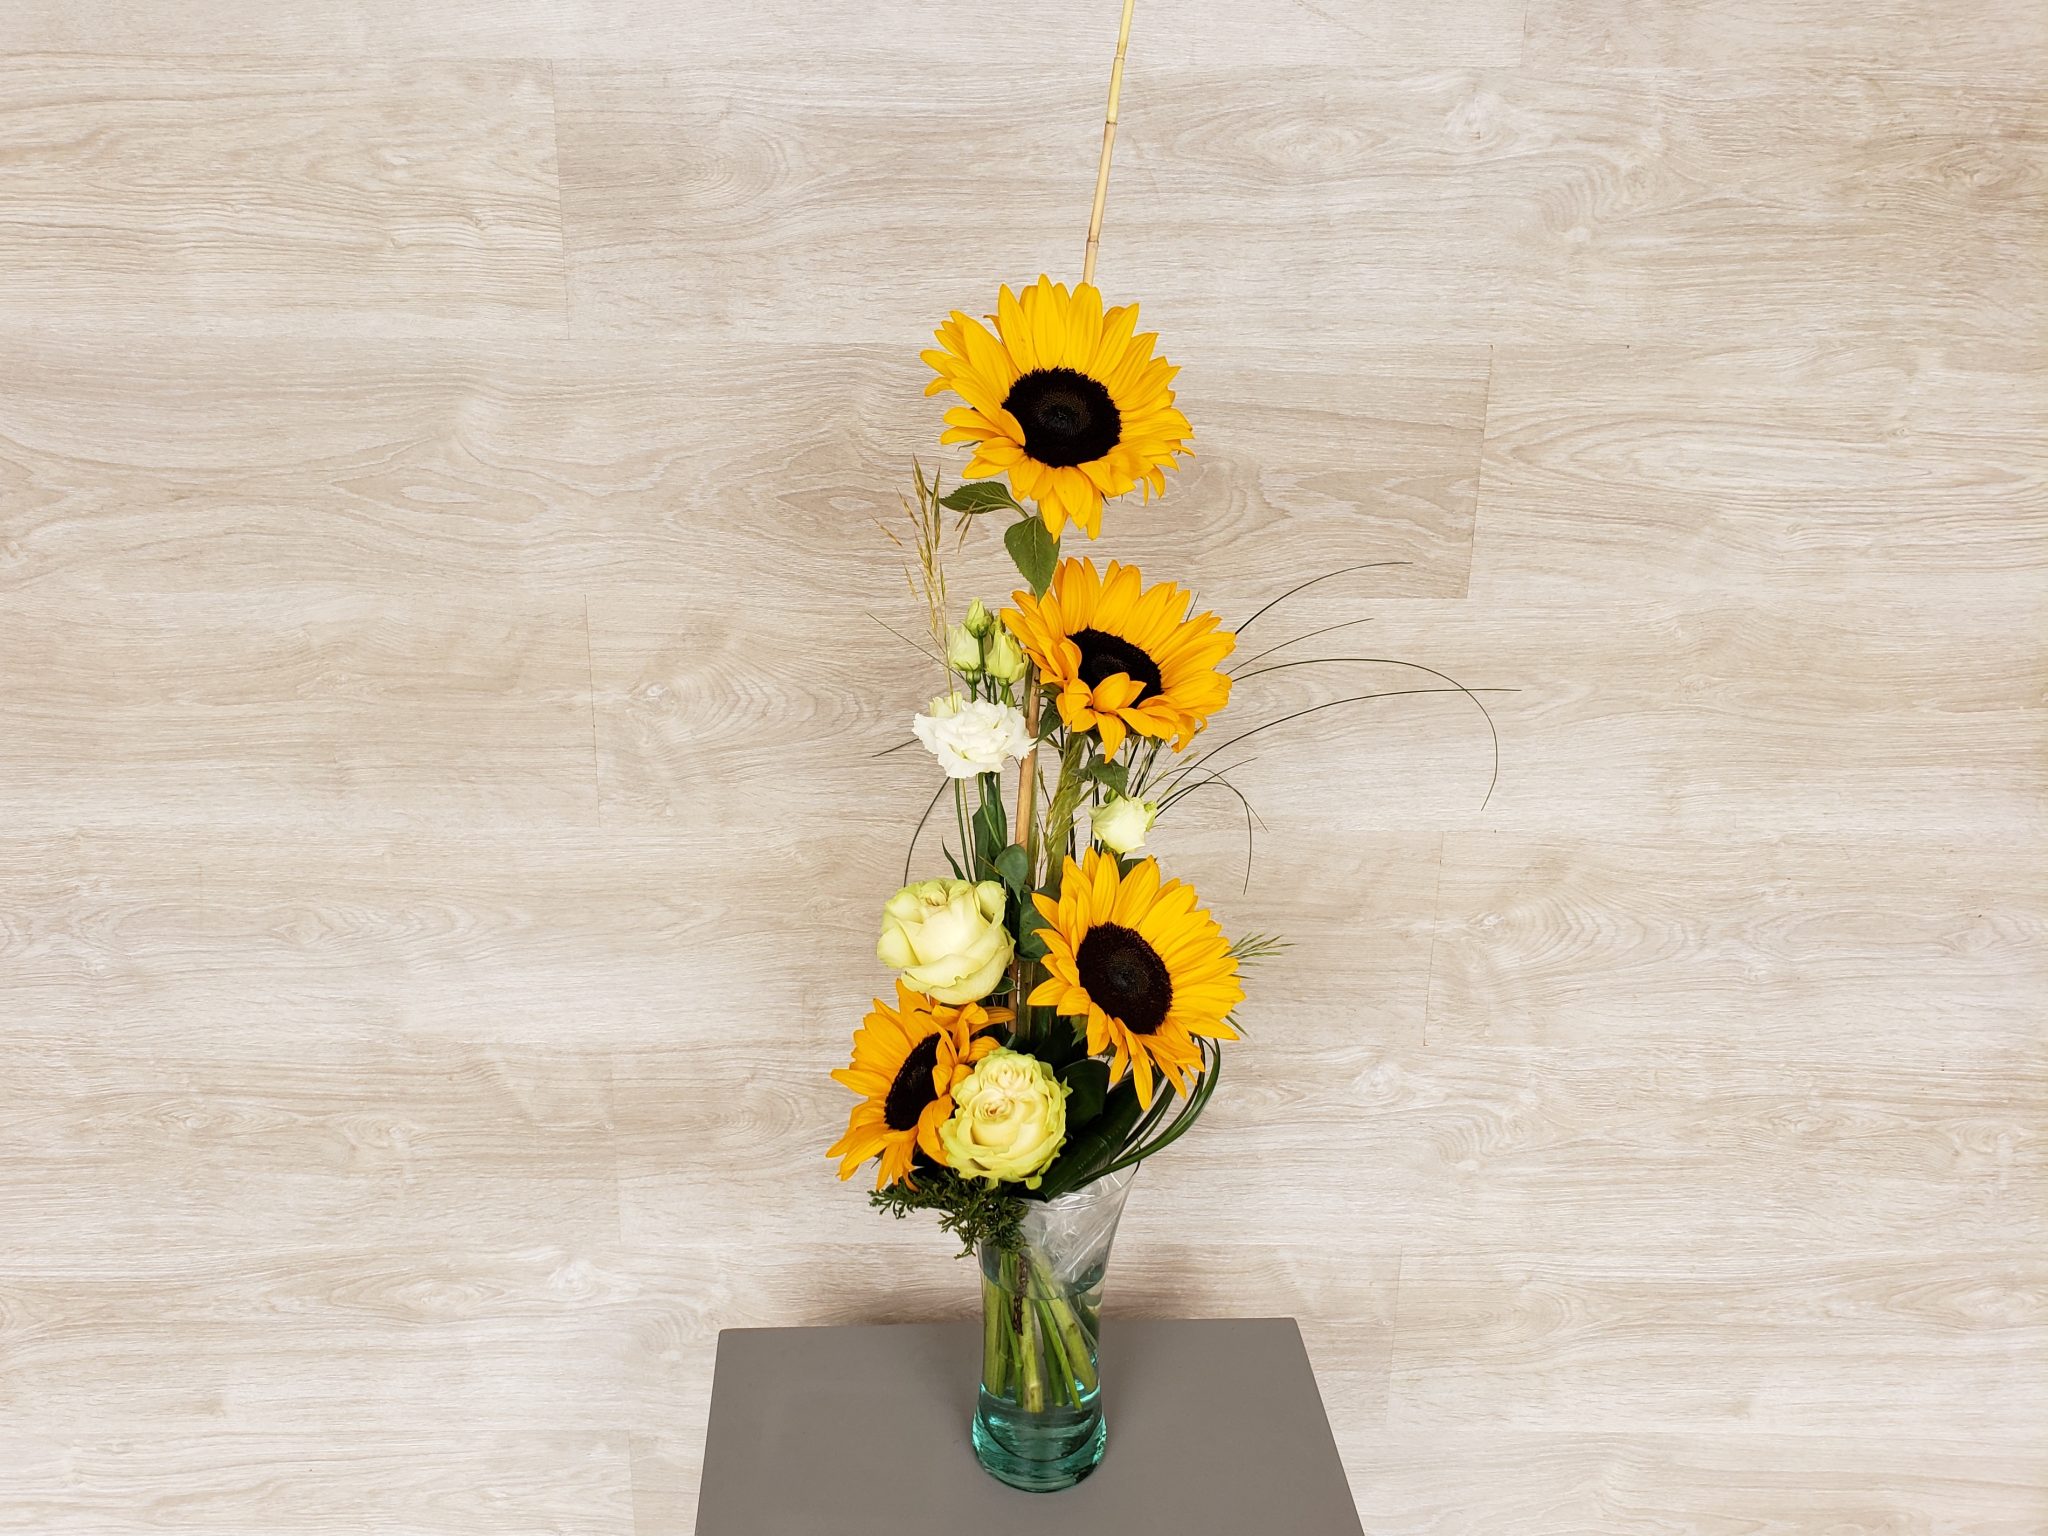 Offrez un rayon de soleil avec ce bouquet en hauteur estival, composé de tournesols, lisianthus et roses.
(photo : taille Classique)... [https://www.mariedanede.fr/boutique/bouquets/bouquet-de-fleurs-moderne-de-tournesols/]